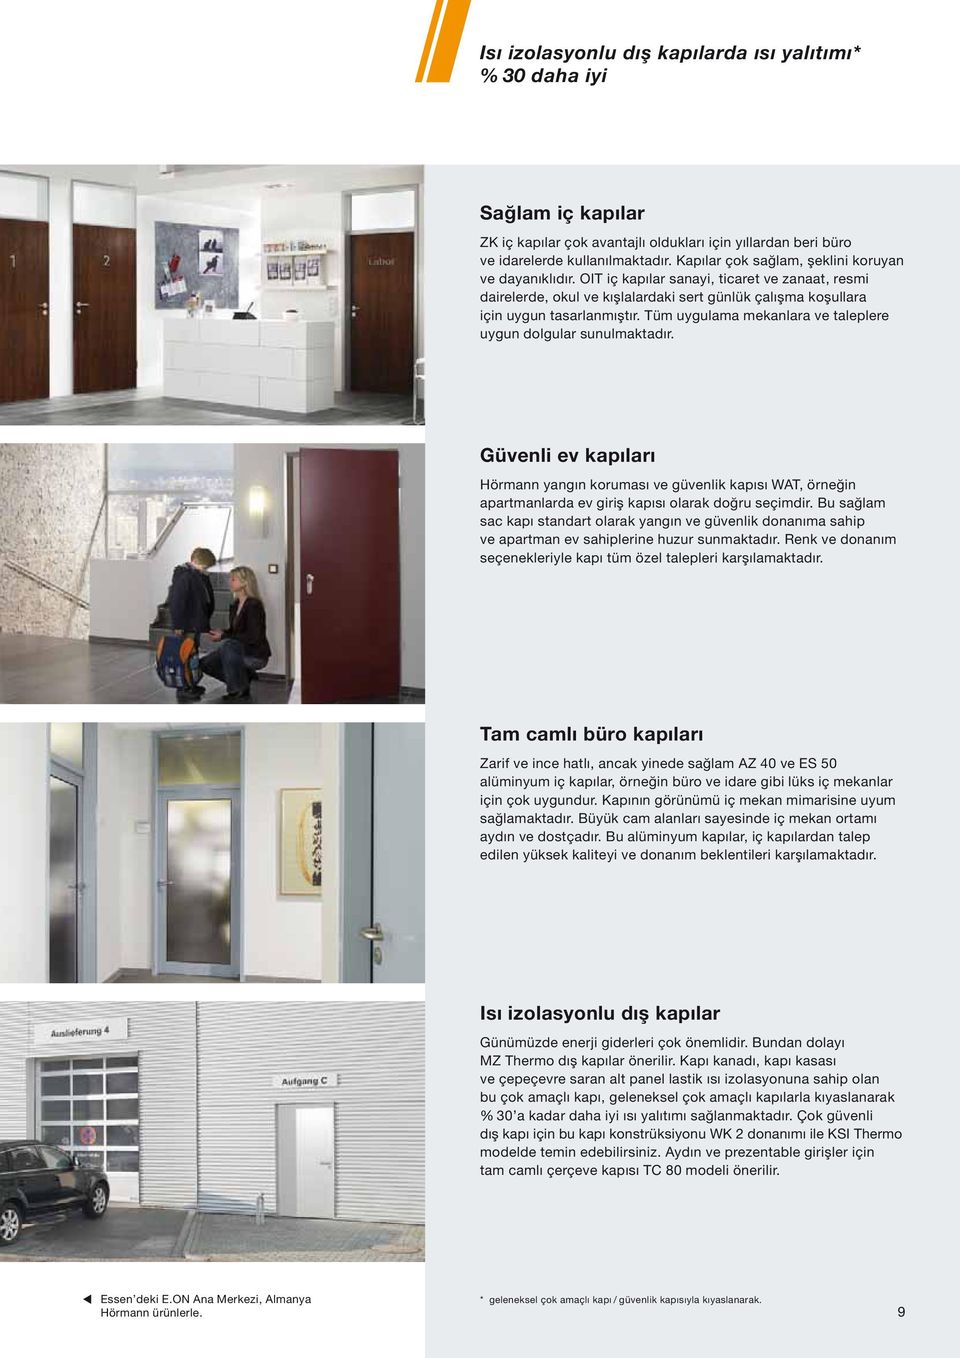 Tüm uygulama mekanlara ve taleplere uygun dolgular sunulmaktadır. Güvenli ev kapıları Hörmann yangın koruması ve güvenlik kapısı WAT, örneğin apartmanlarda ev giriş kapısı olarak doğru seçimdir.